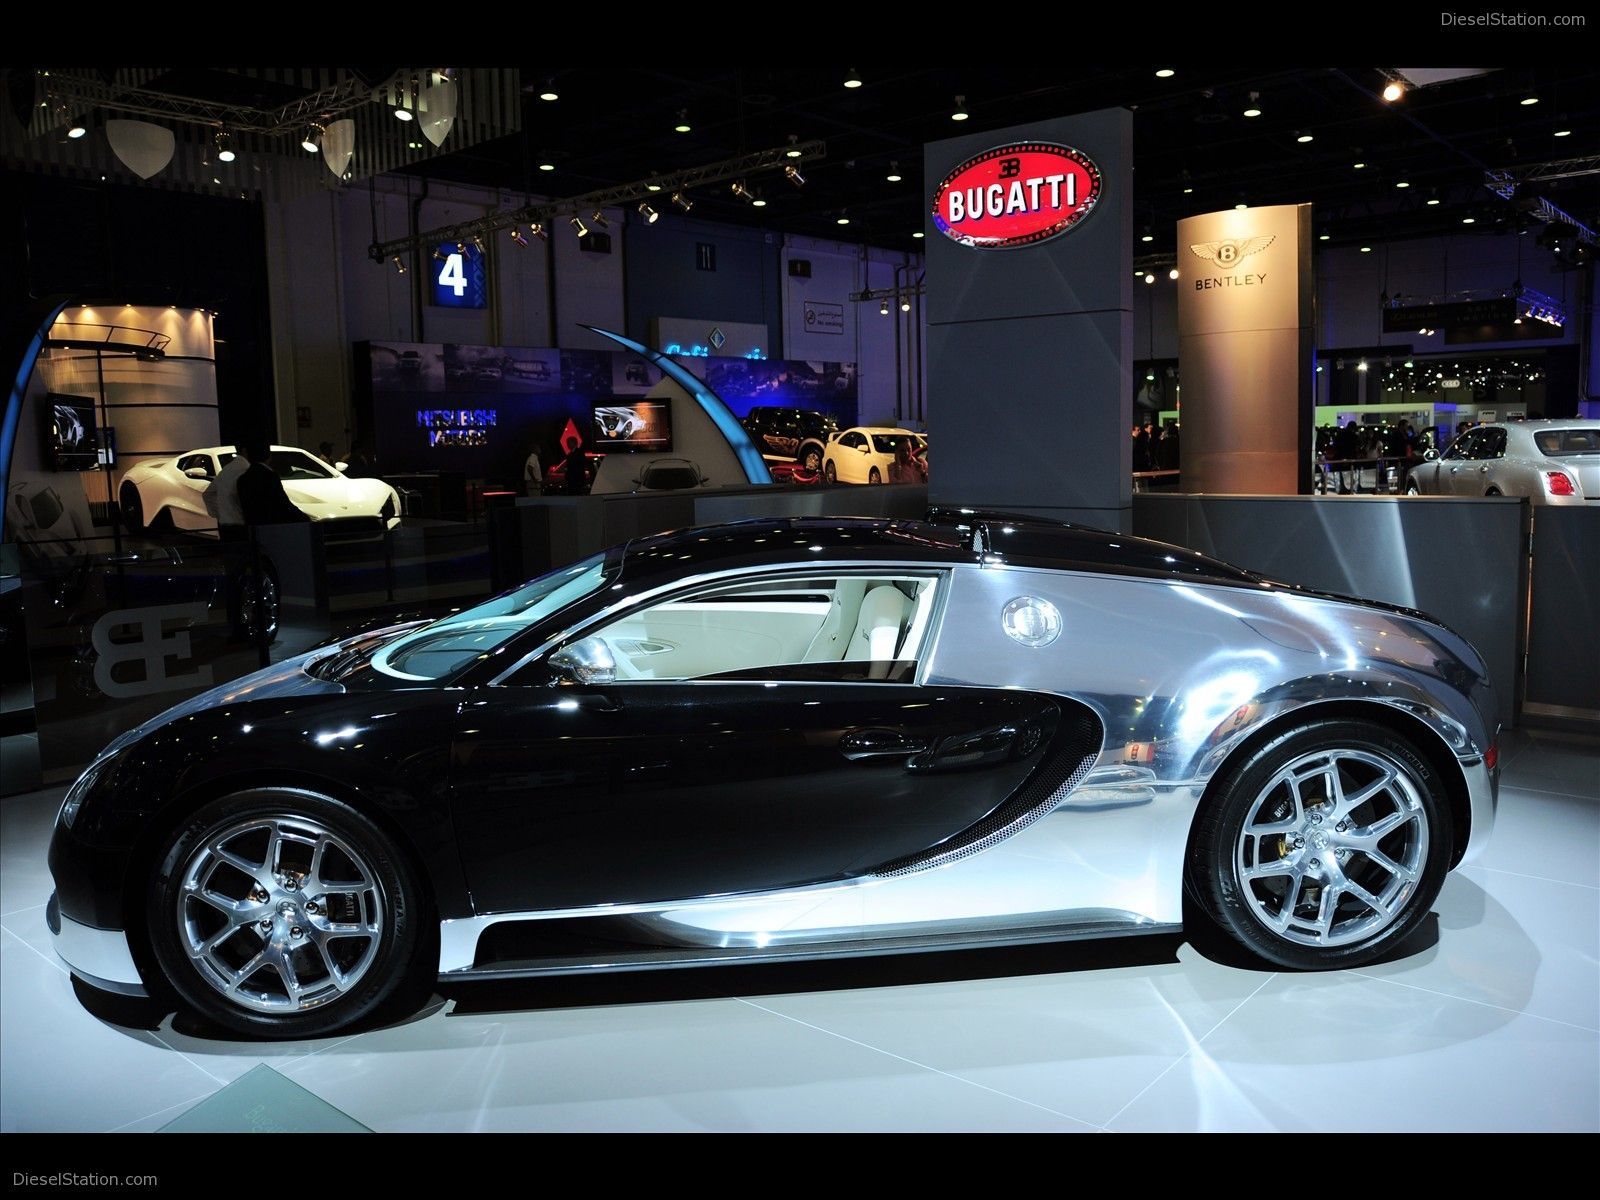 Bugatti Veyron Centenary Special Editon Dubai Exotic Car Wallpaper ...